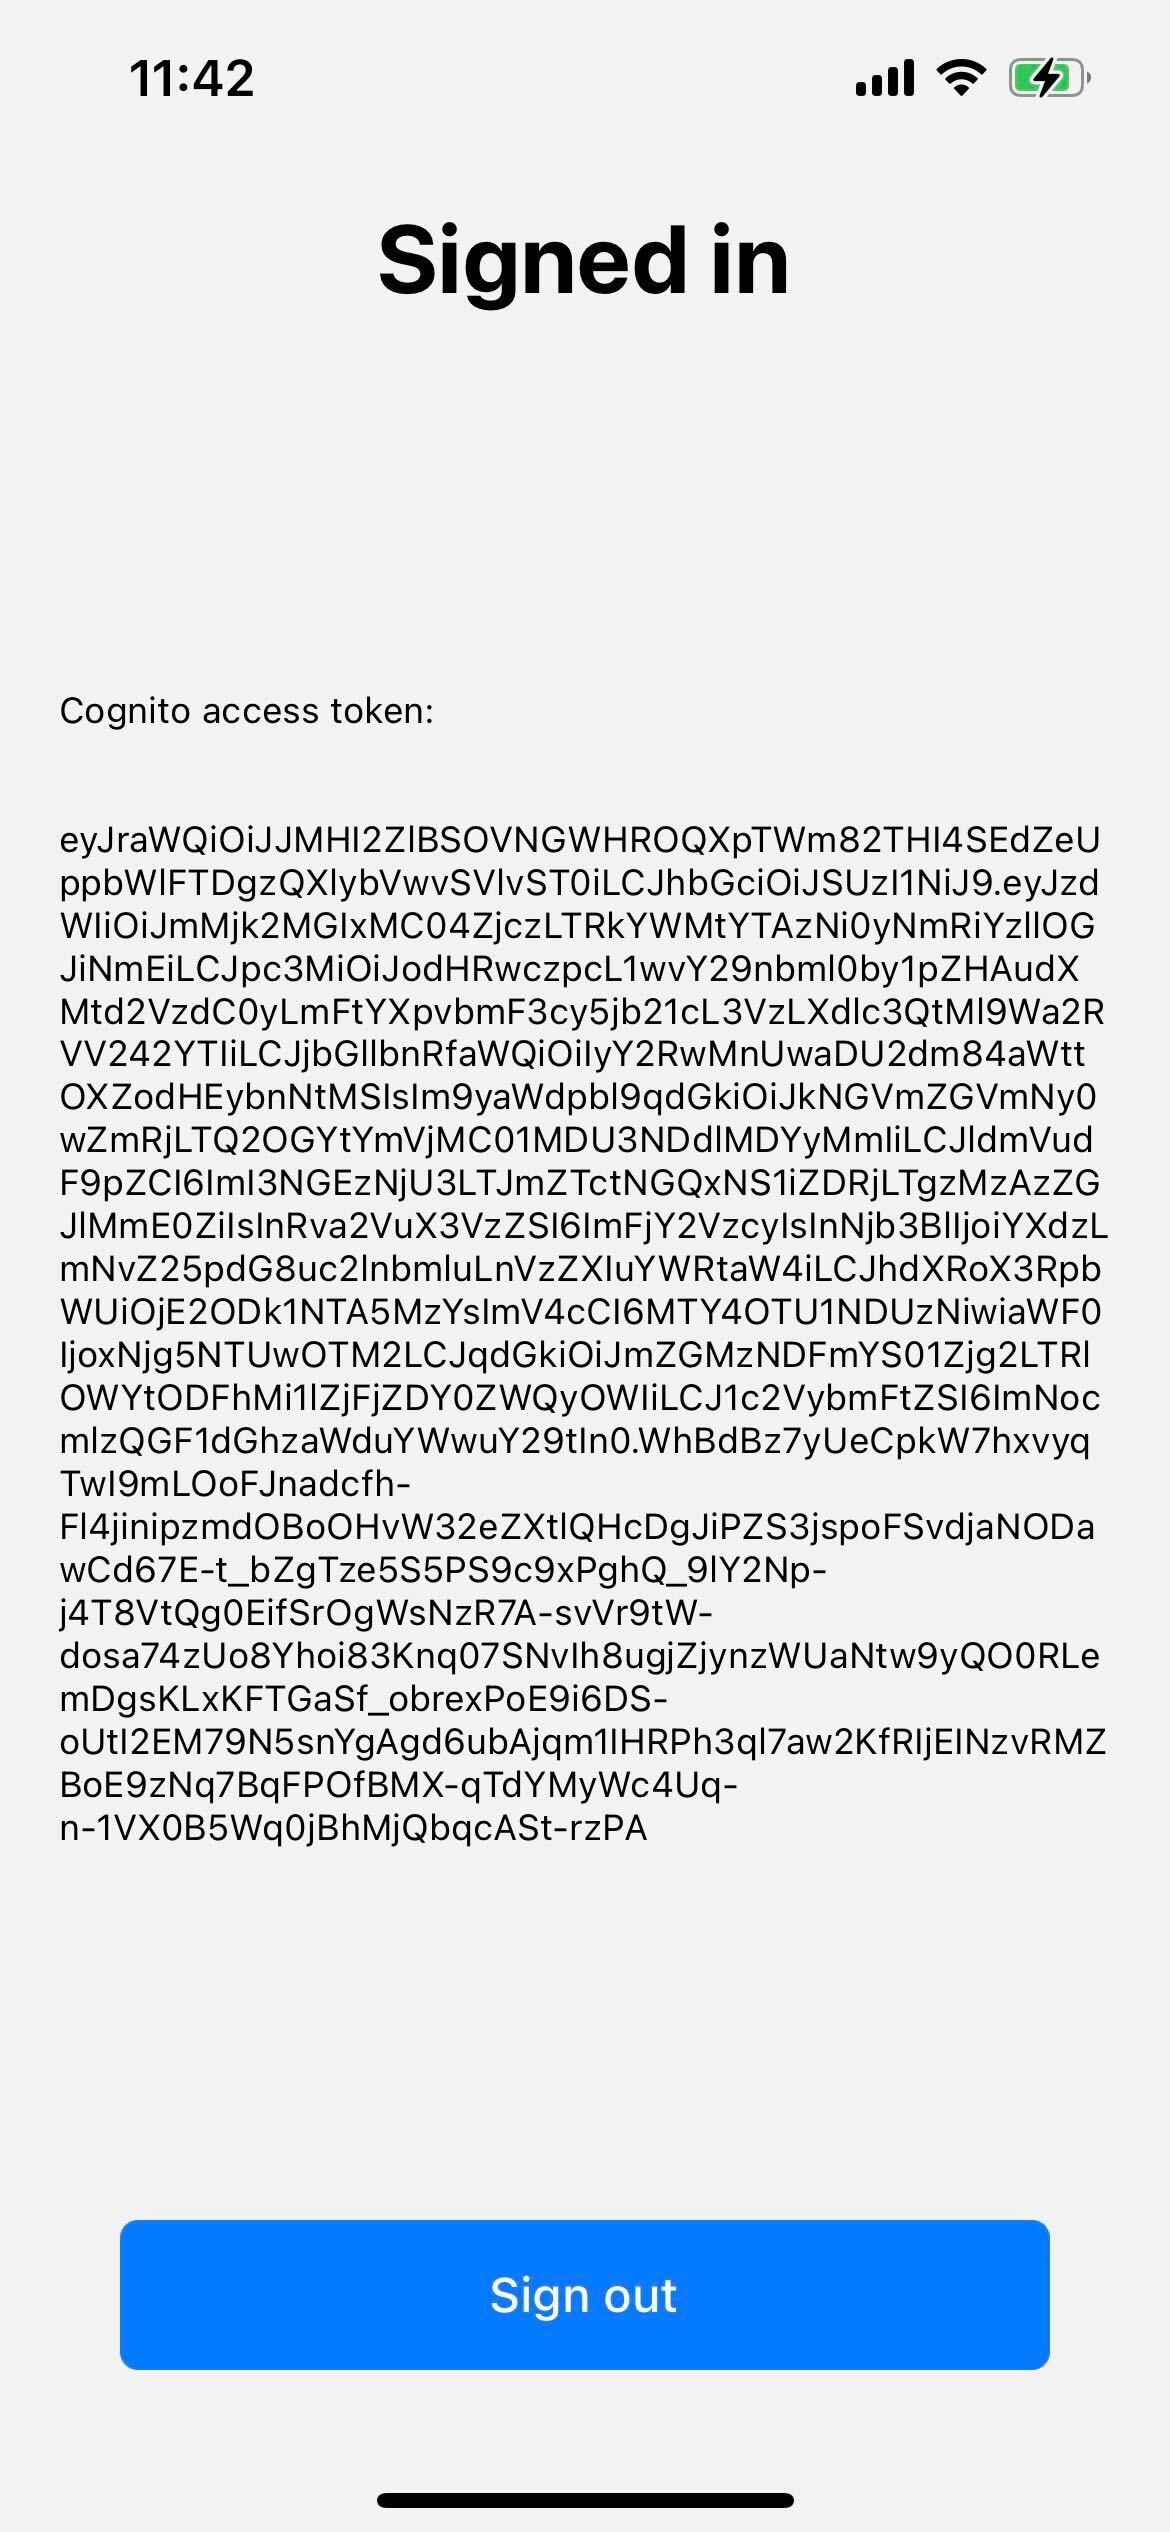 Cognito access token (iOS)